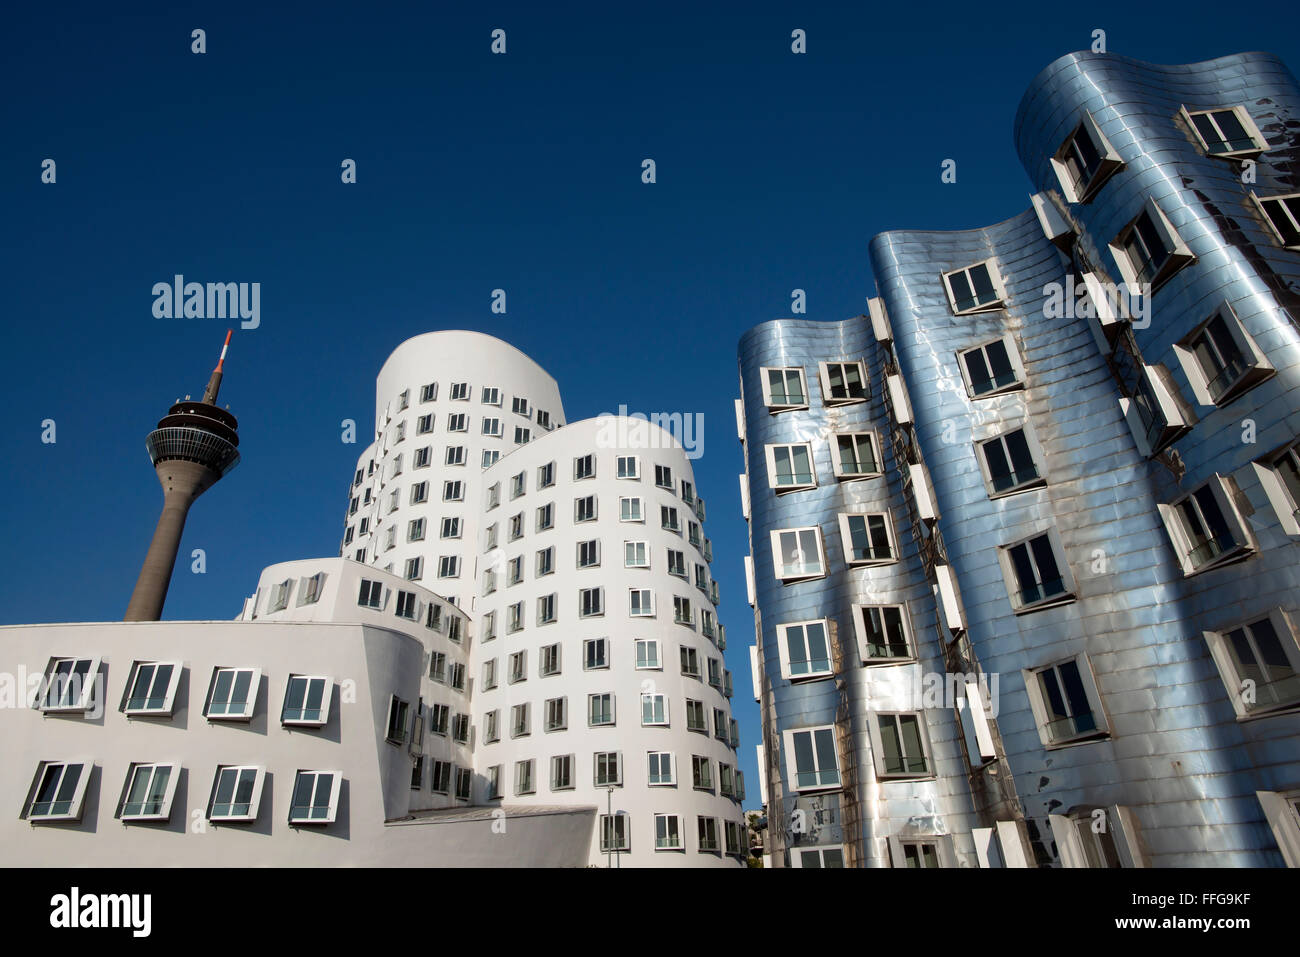 Gehry buildings in the media port of dusseldorf, north rhine-westphalia, germany, europe Stock Photo